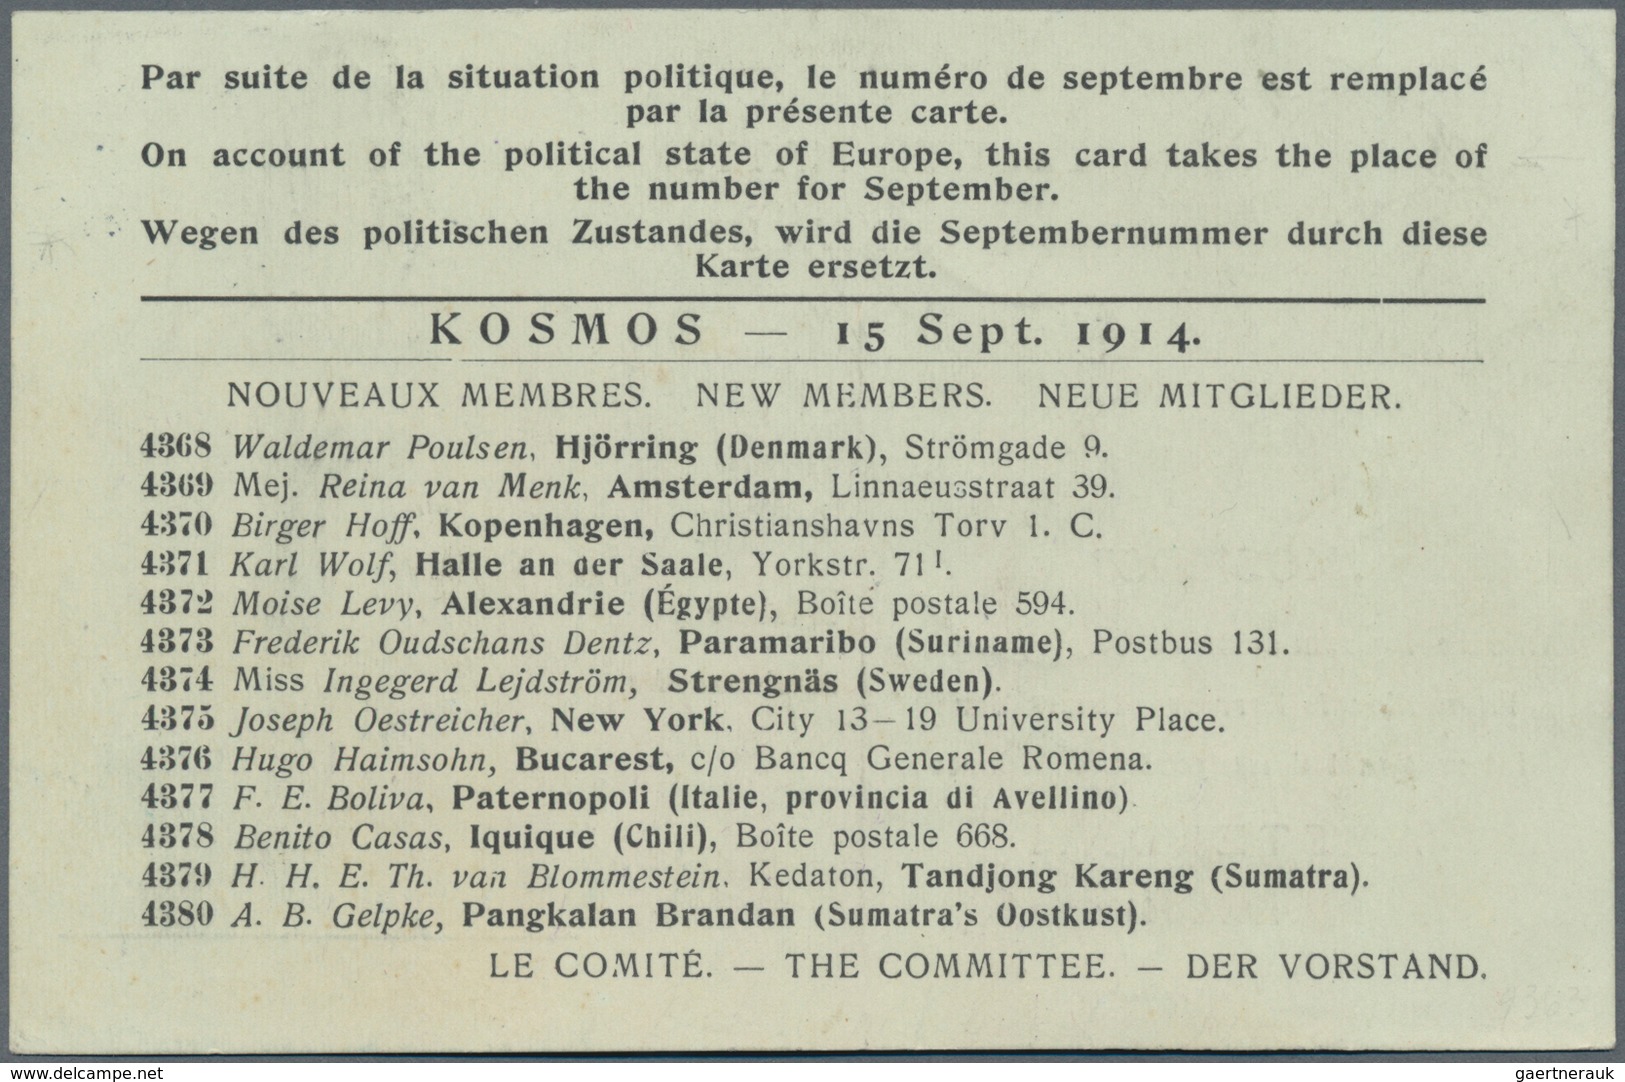 Deutsch-Ostafrika - Besonderheiten: 1914, Registered Card "KOSMOS International Correspondence Allia - Deutsch-Ostafrika